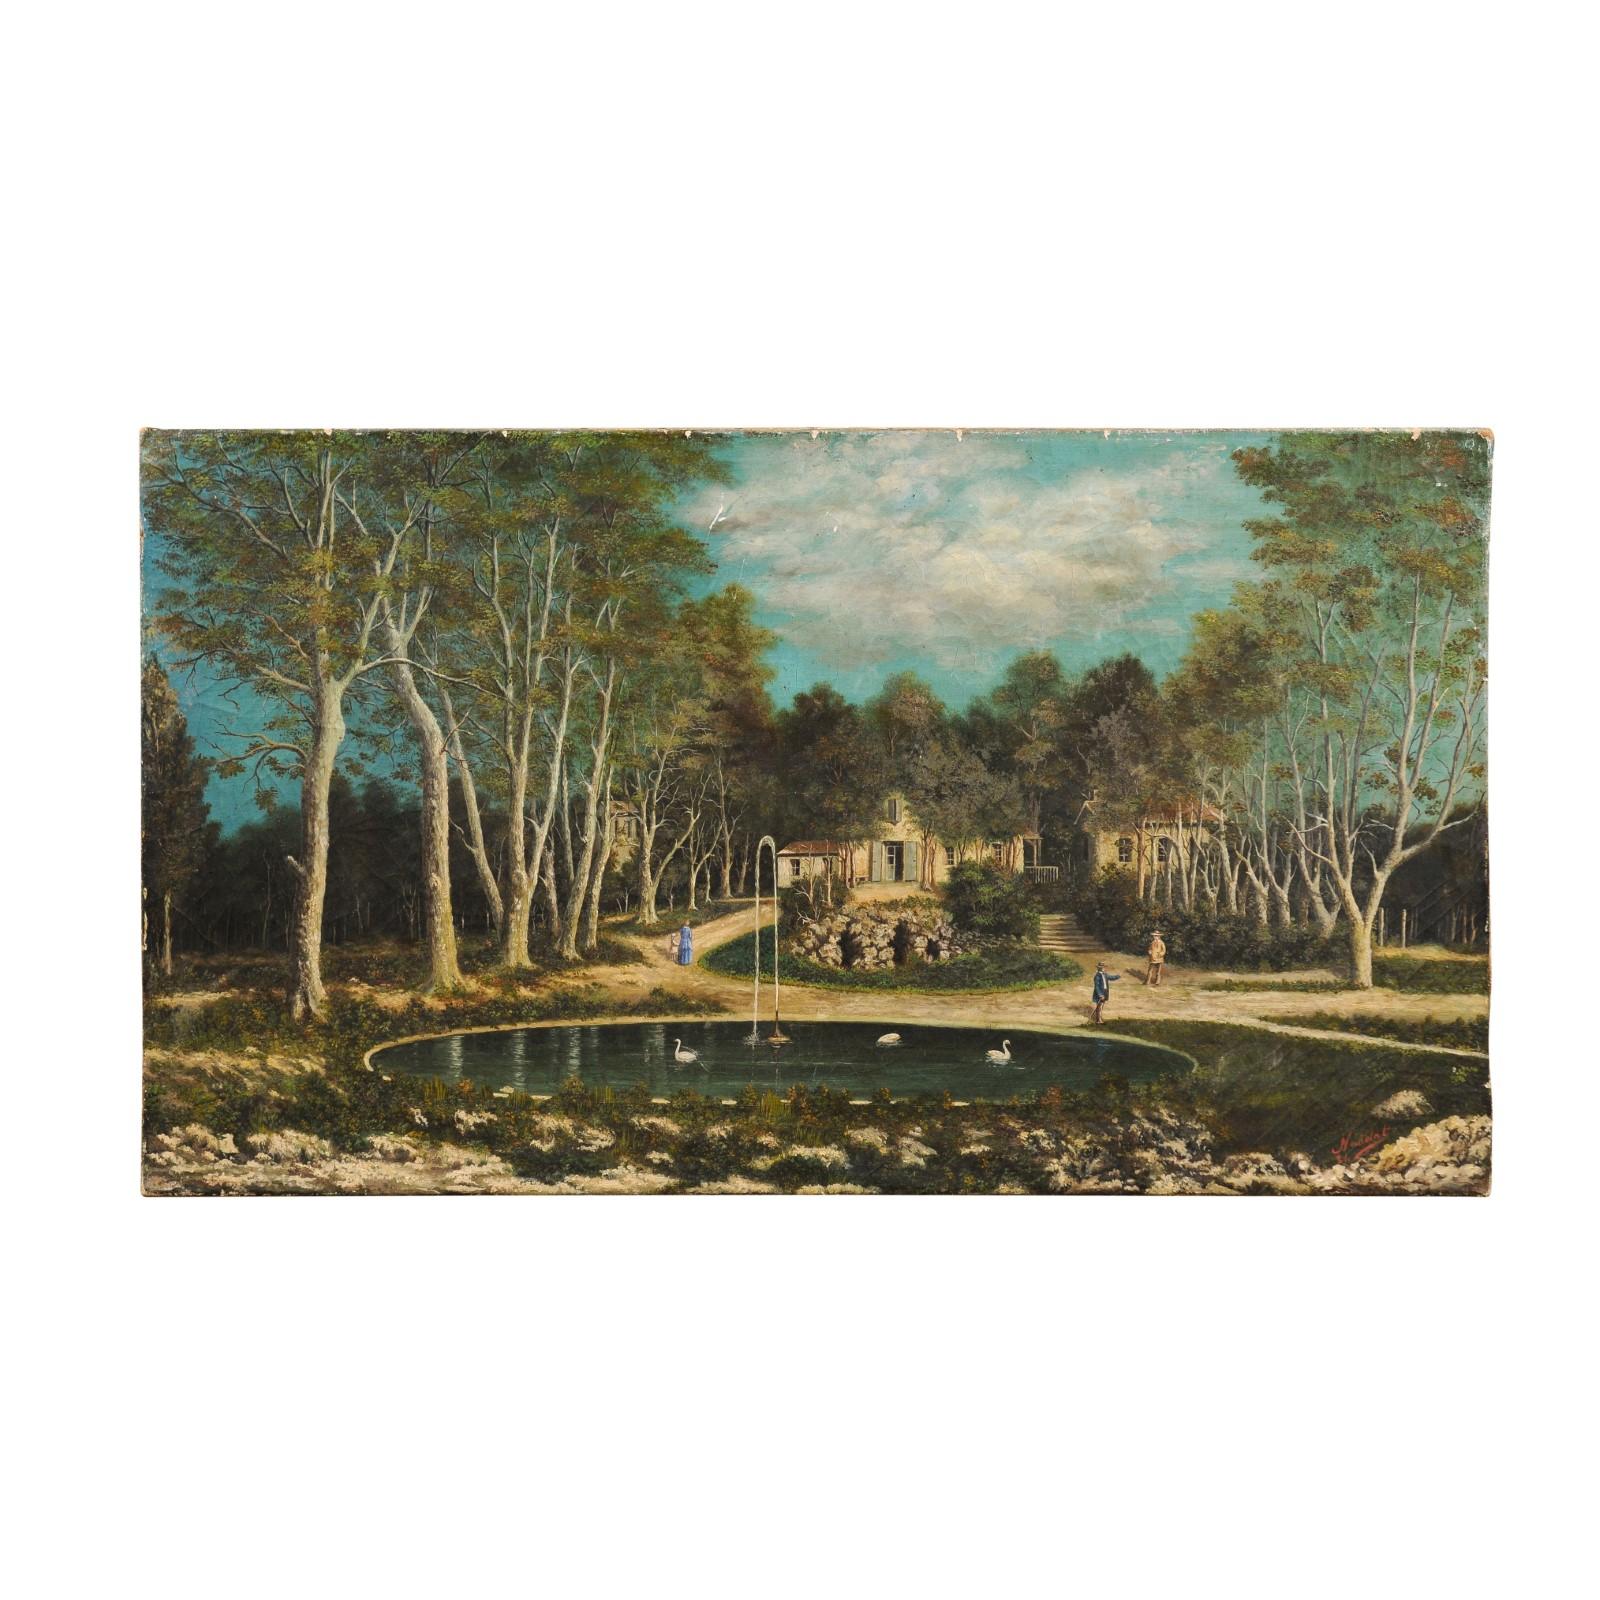 Peinture de paysage française à l'huile sur toile du XIXe siècle, représentant un élégant hameau avec une fontaine au premier plan. Créée en France au XIXe siècle, cette peinture représente une scène sereine et paisible. Caché derrière des arbres,